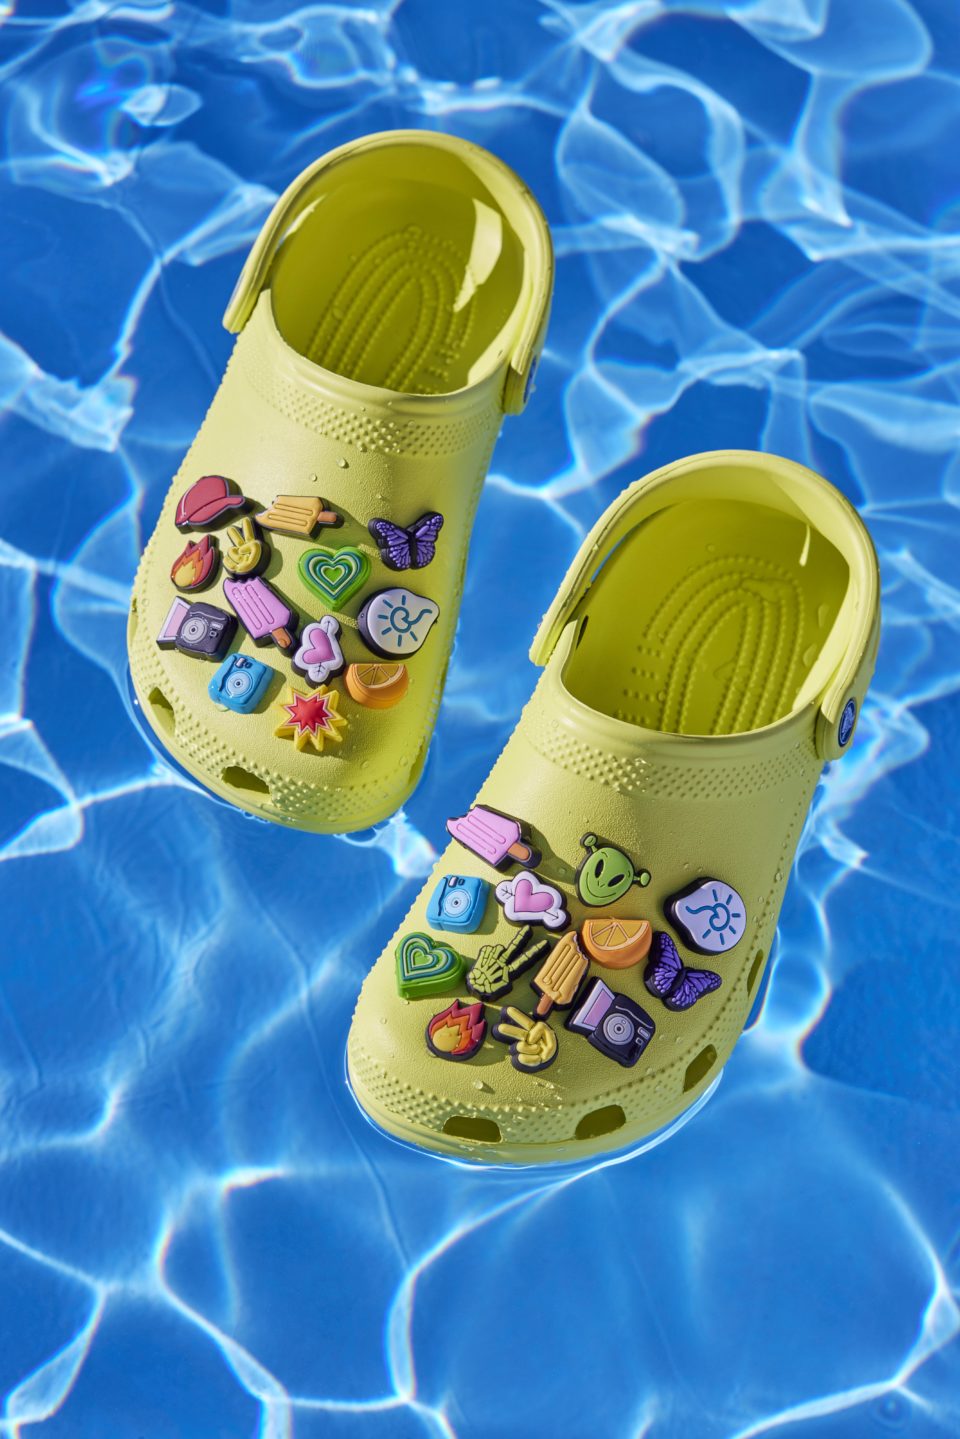 Crocs: Your Monsoon Footwear Favorite